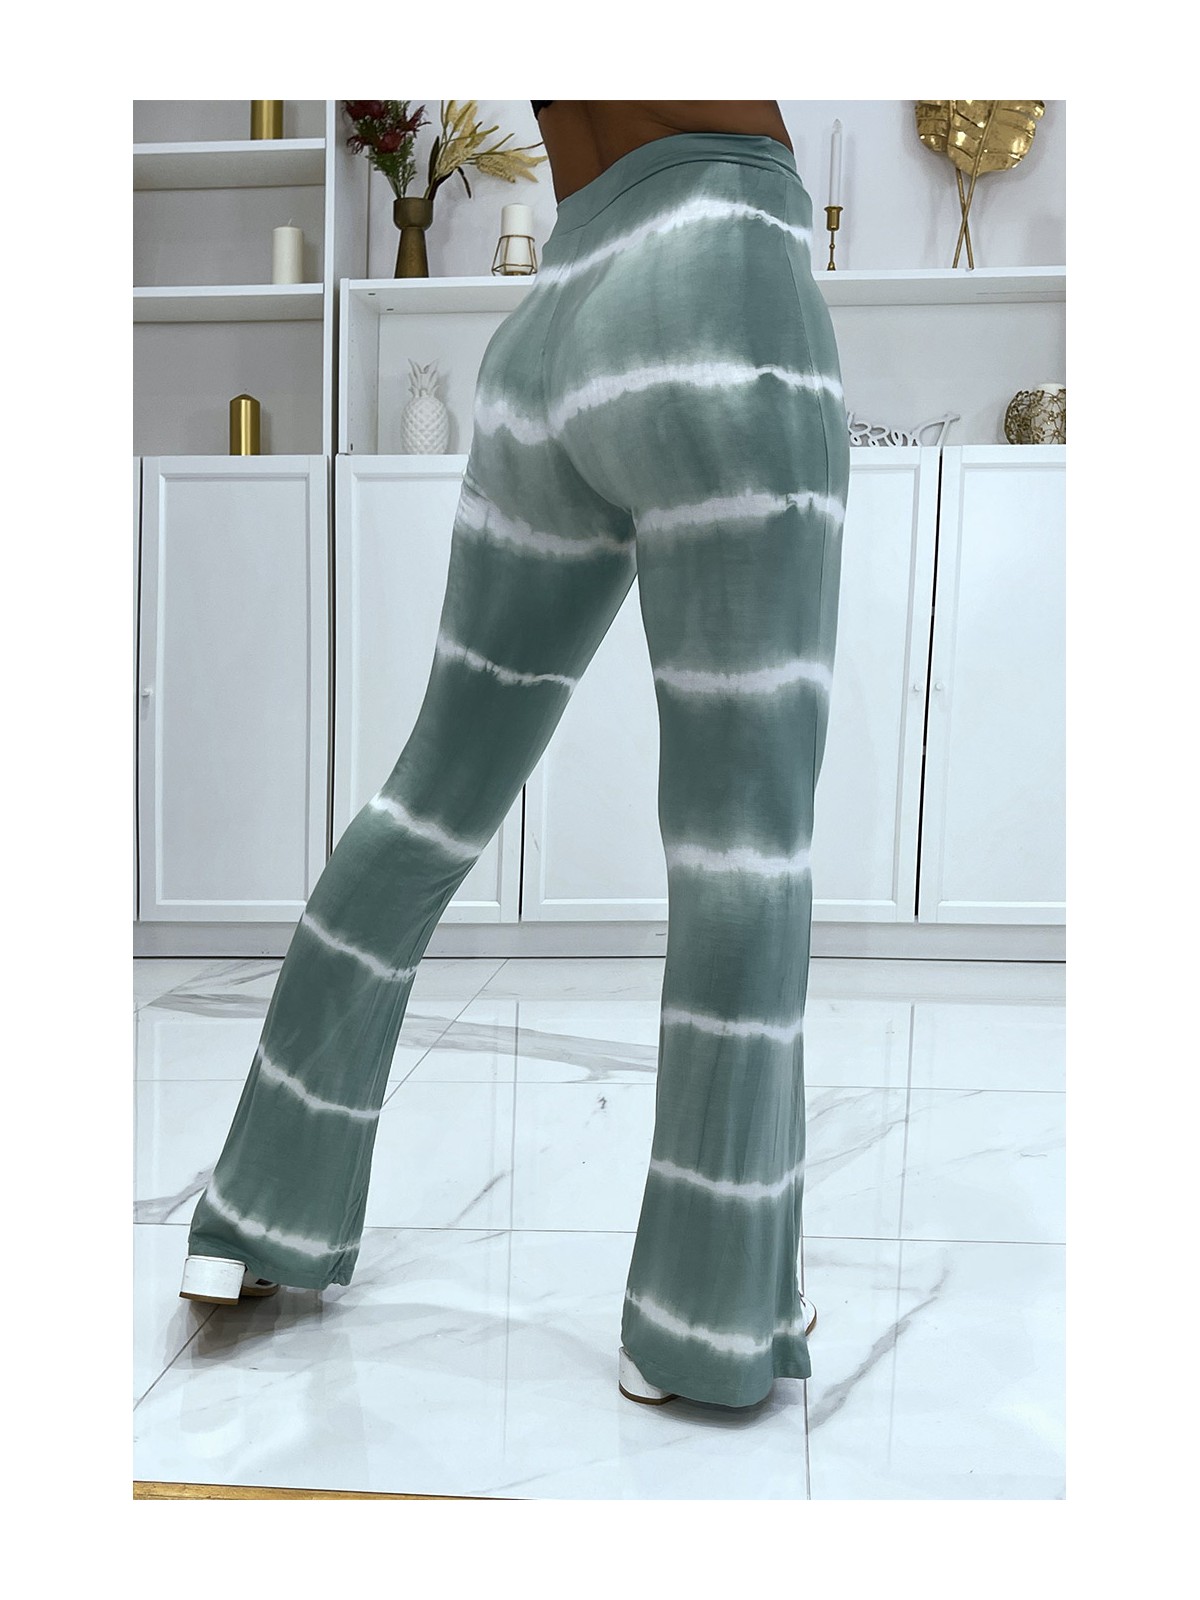 Pantalon moulant vert d'eau patte d'éléphant effet tye and die bicolore élastique à la taille  - 3